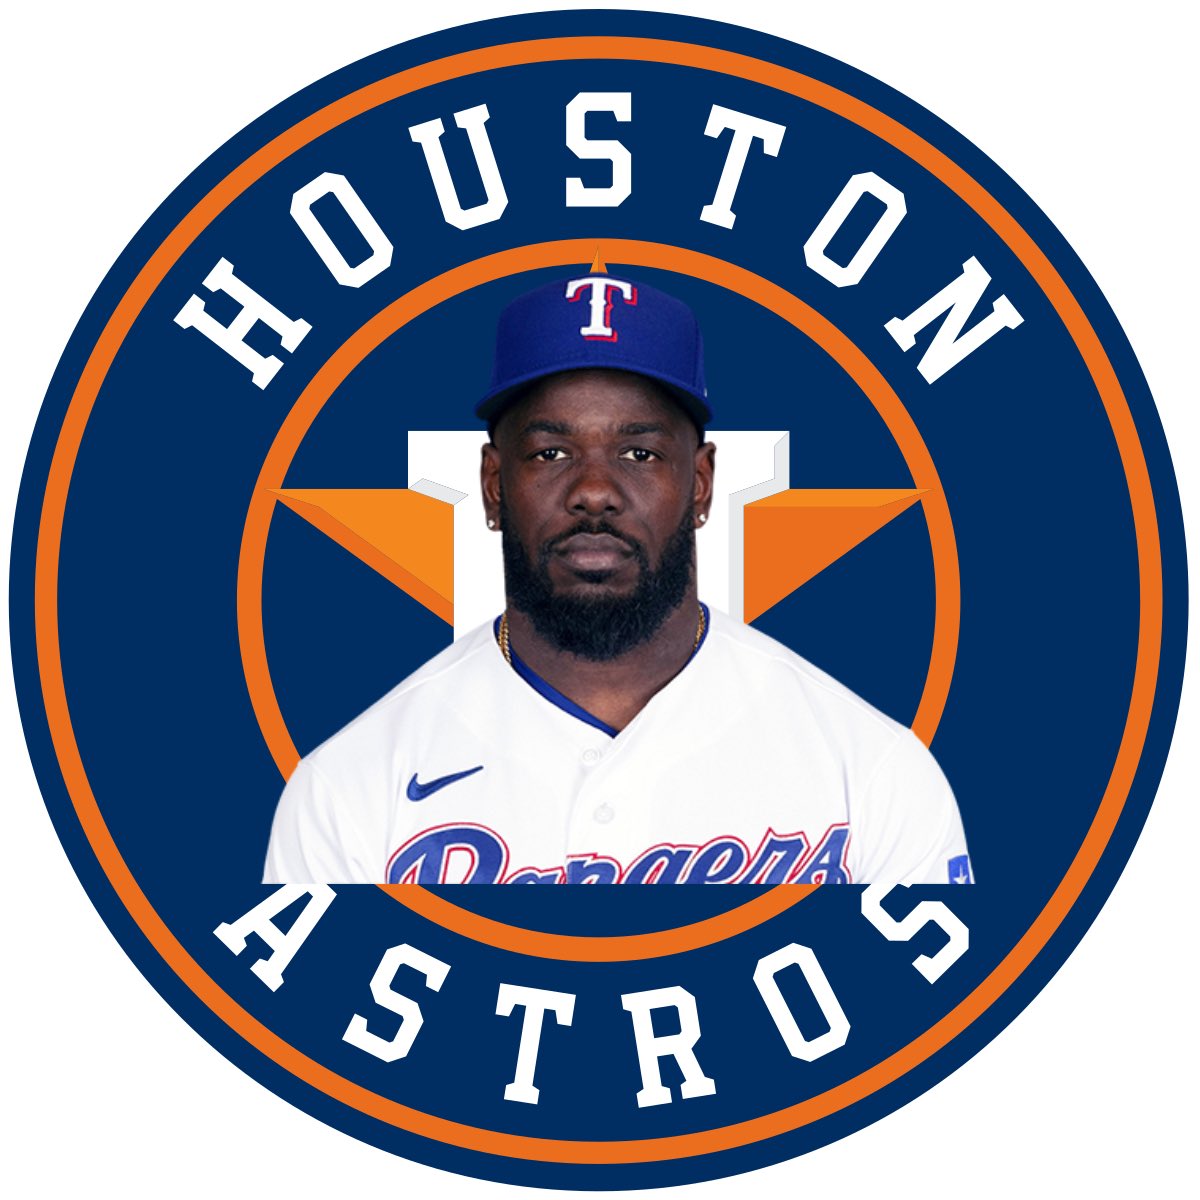 Houston Astros - Houston Astros added a new photo.